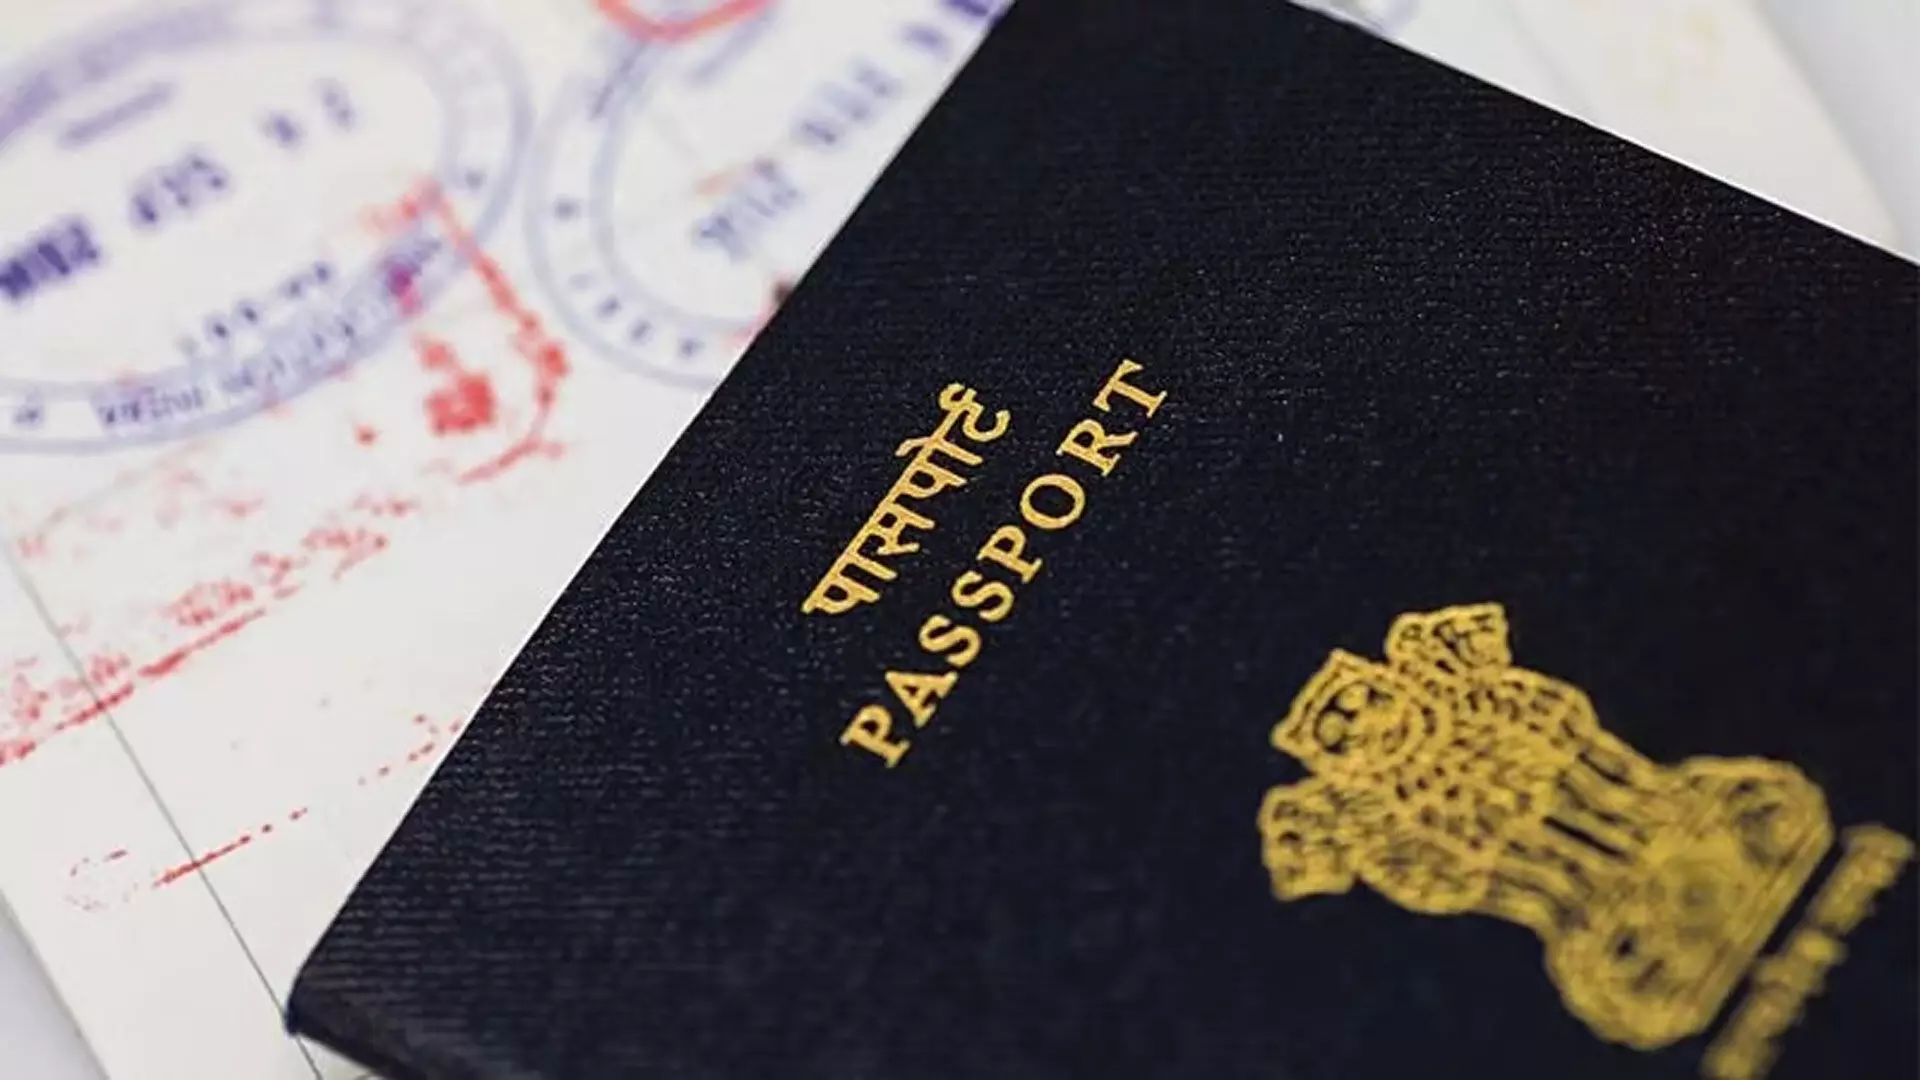 Fake पासपोर्ट पर पाकिस्तान जाने के आरोप में महिला पर मामला दर्ज